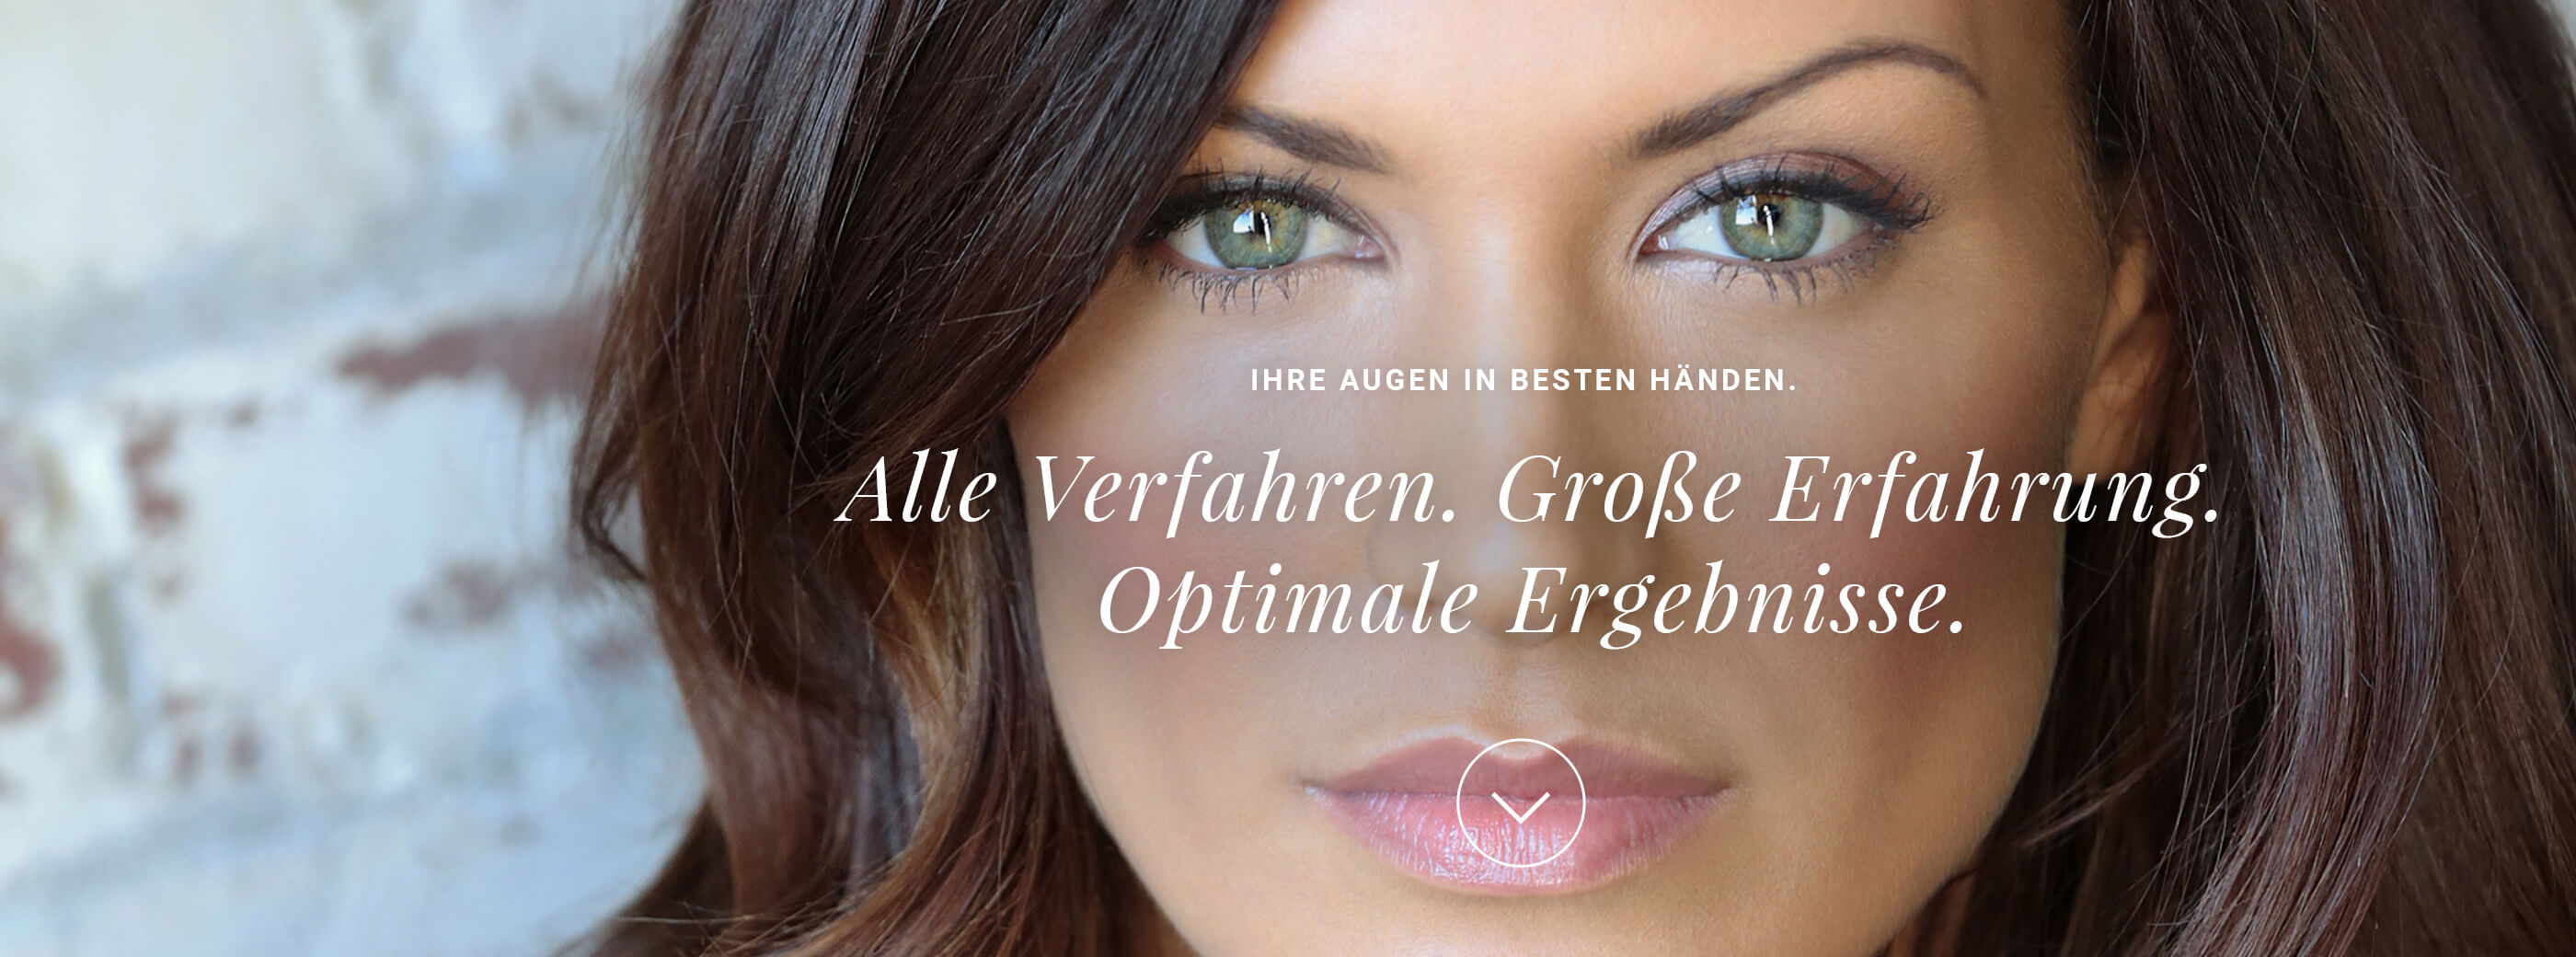 Werbeagentur Lehnen Markenreich: Crossmediale Response Kampagne für das Augenlaserzentrum Neu-Ulm